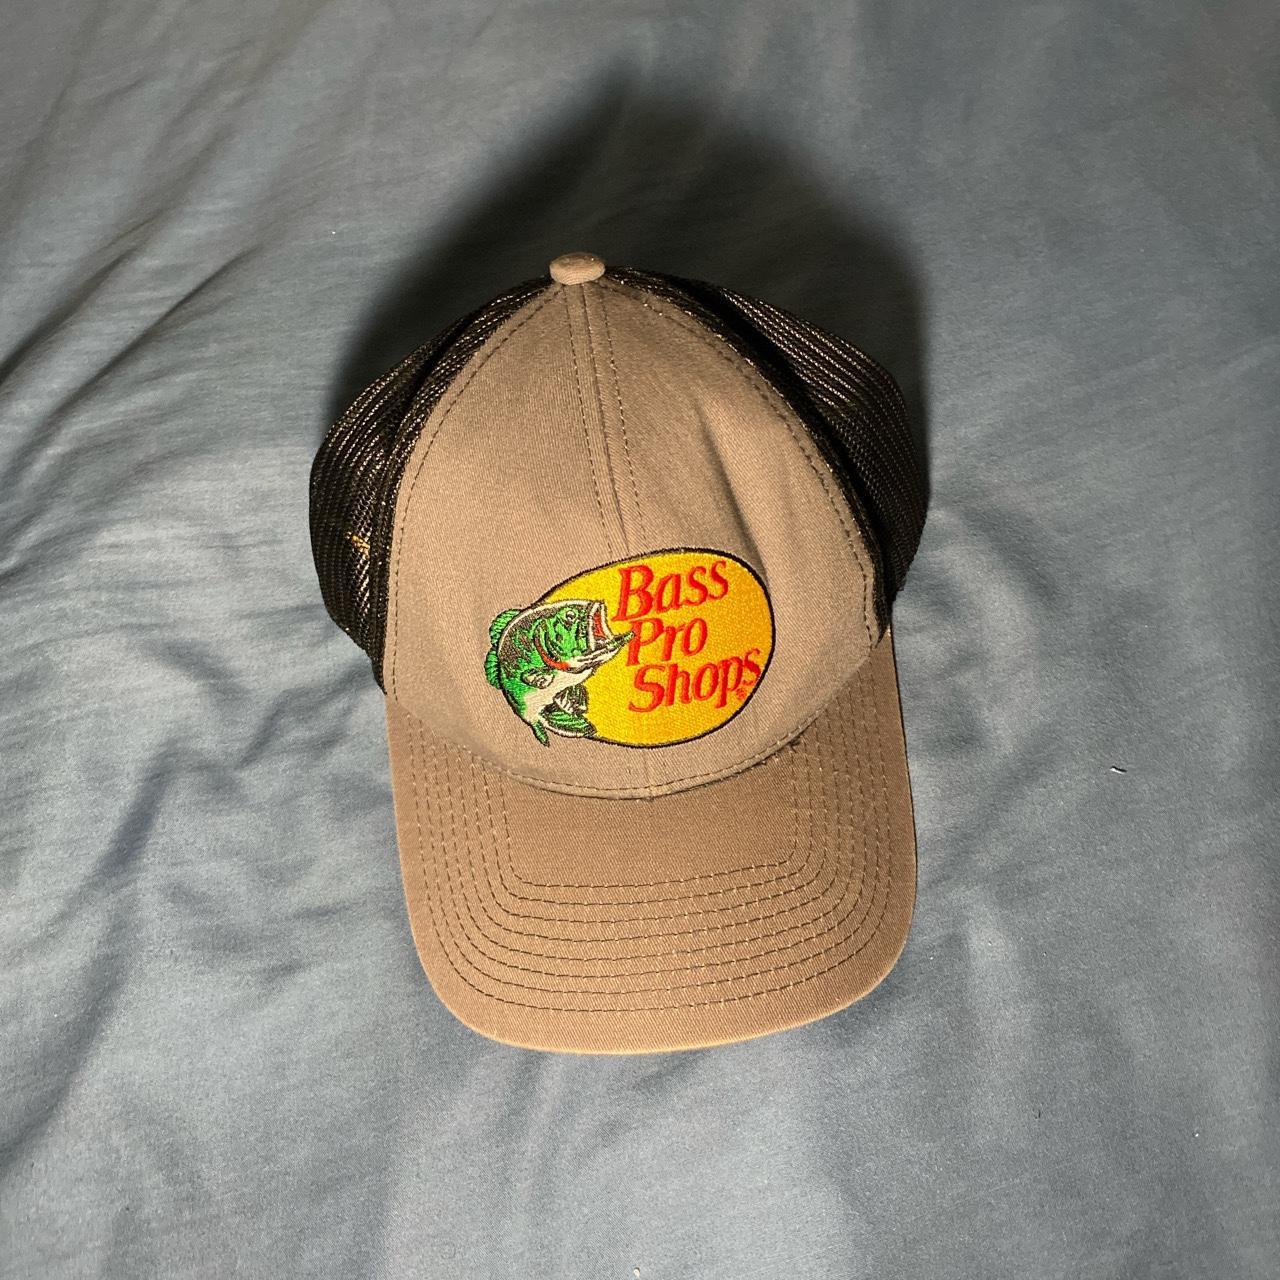 Bass Pro Shops trucker hat (grey) - Depop